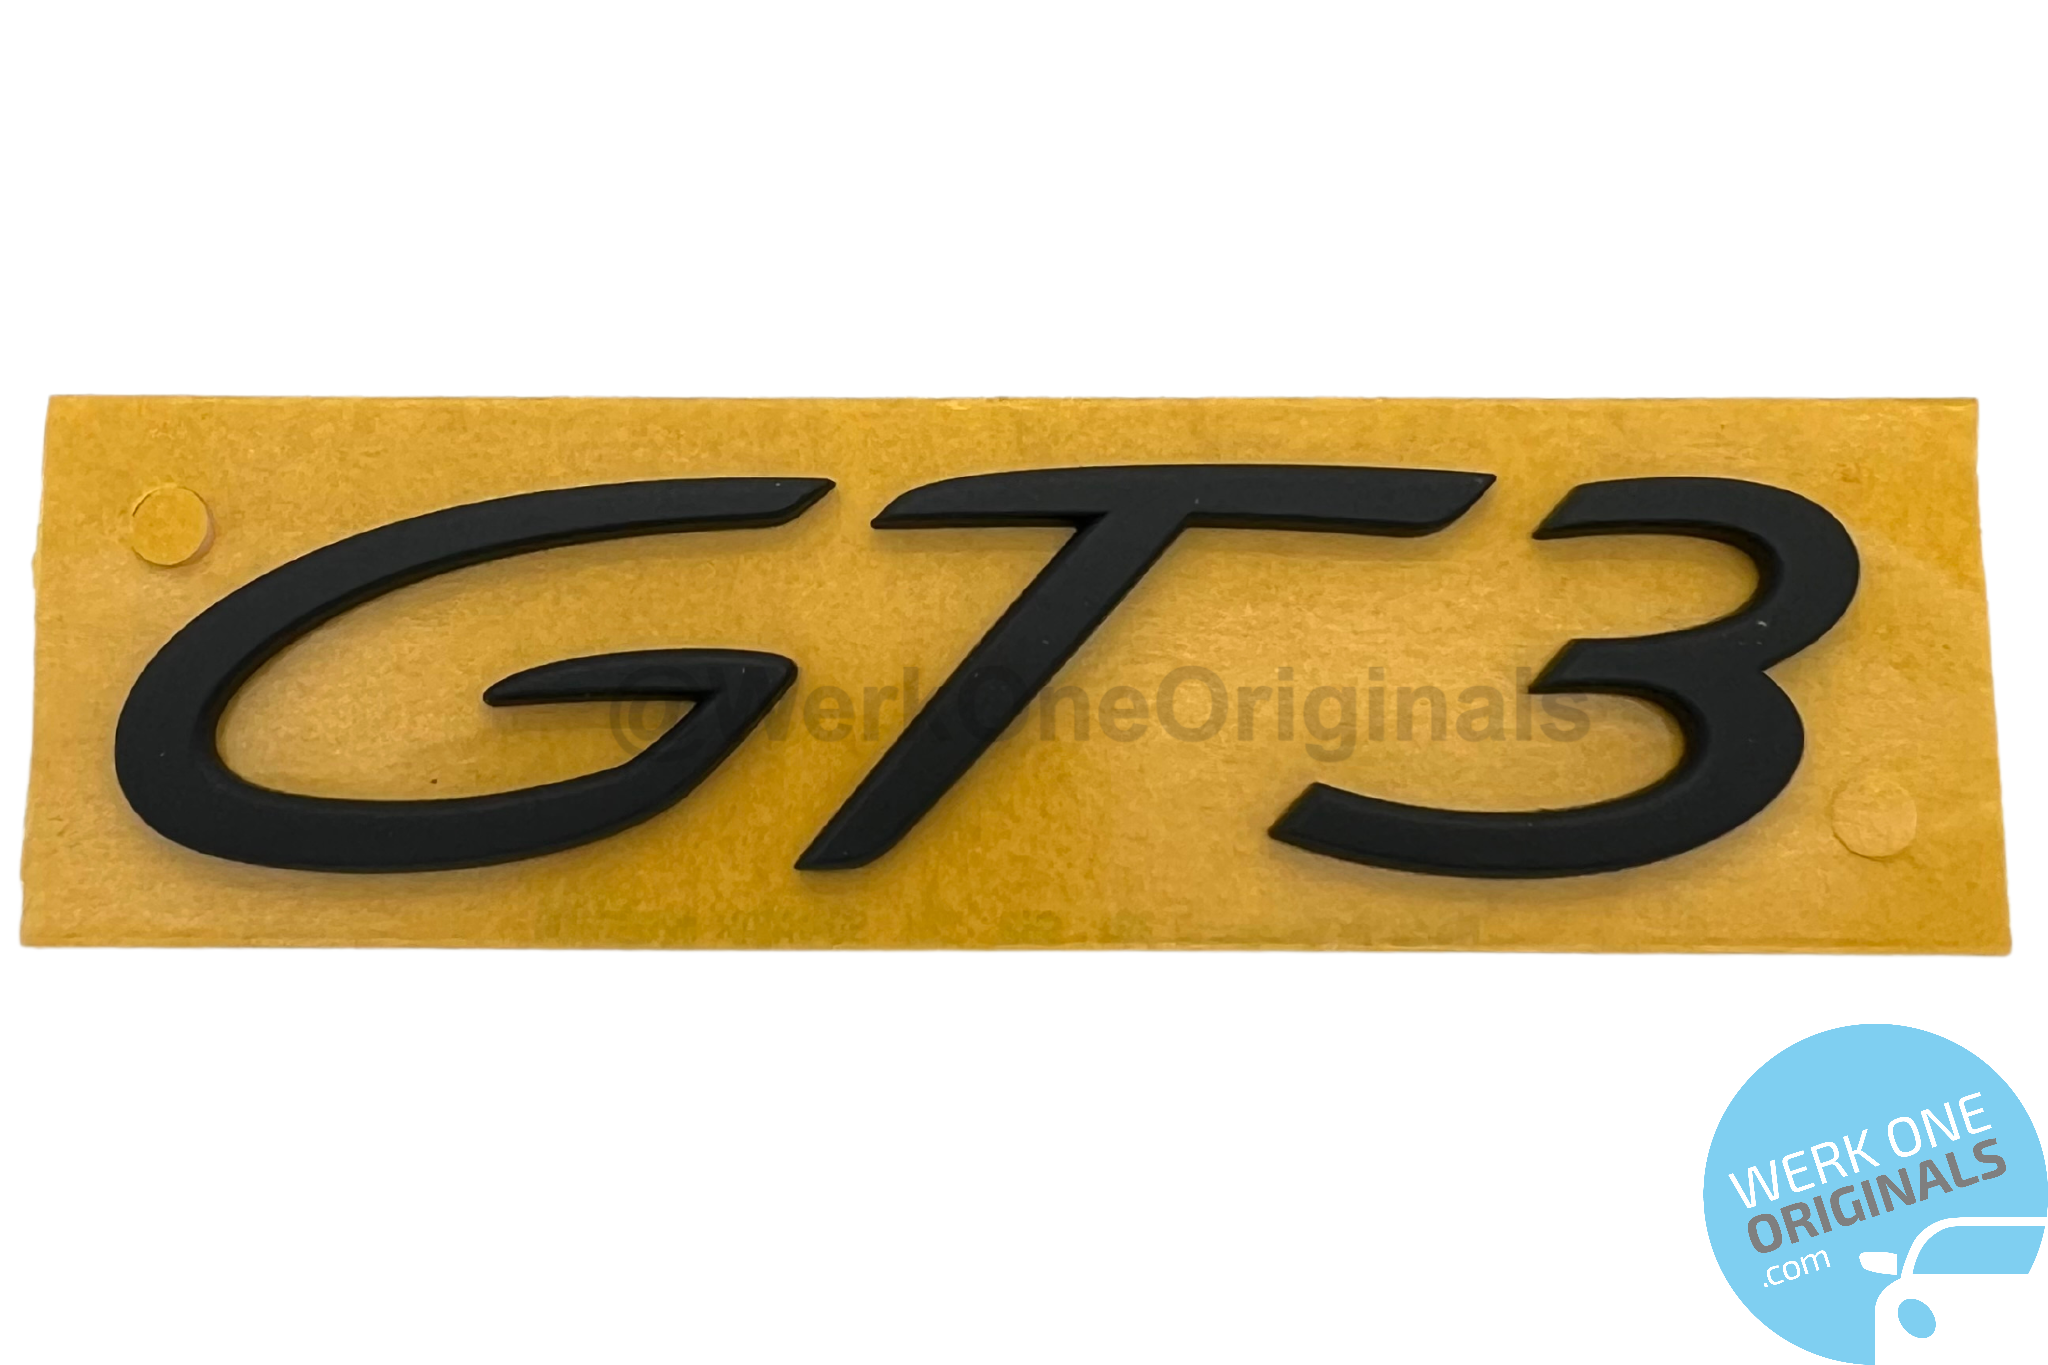 Porsche Official 'GT3' Rear Badge in Matte Black for 911 Type 991 GT3 Models